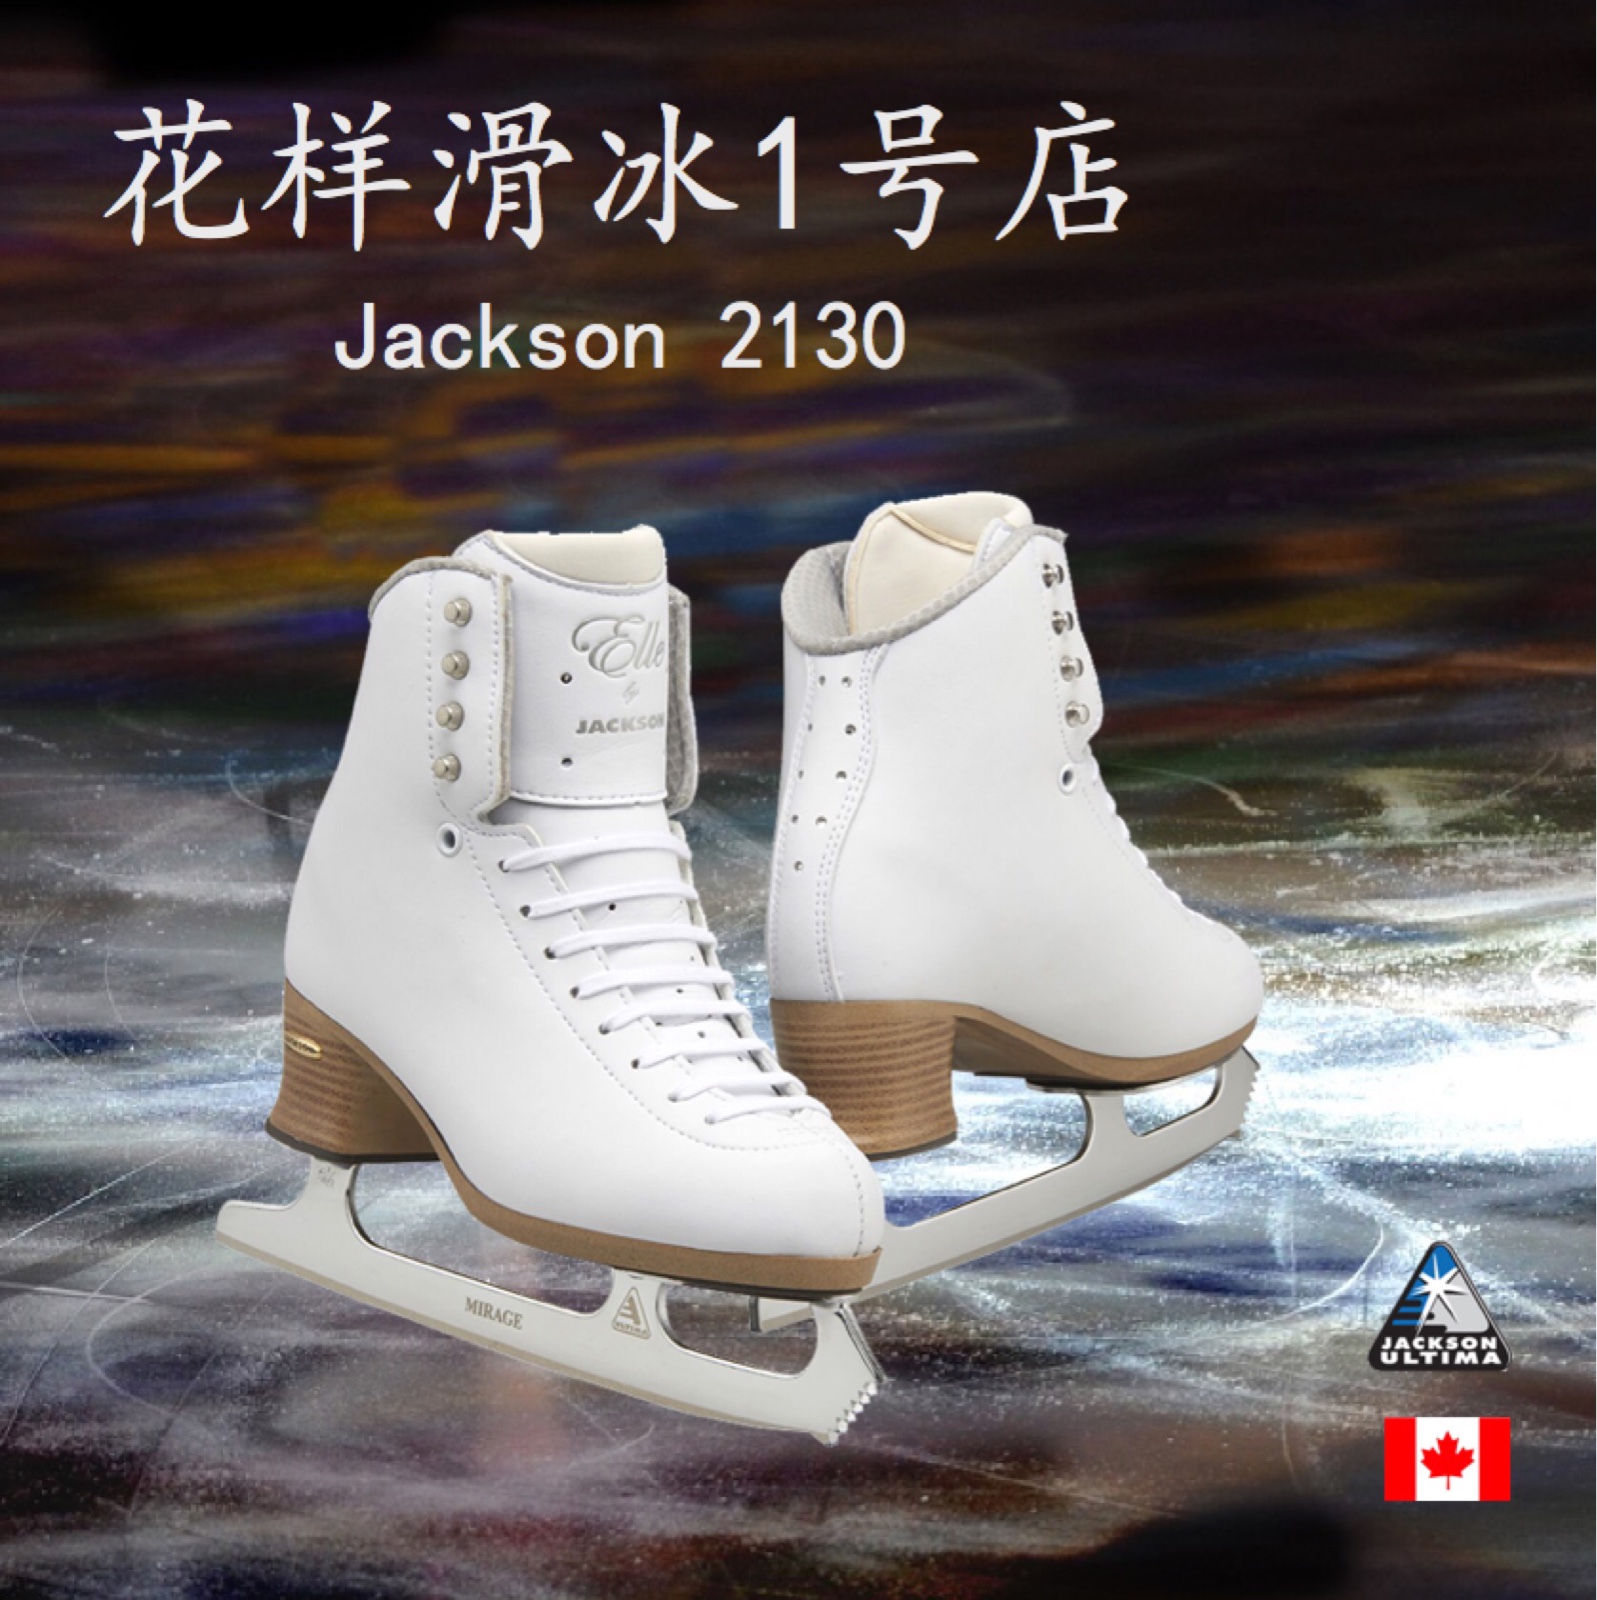 【花样滑冰1号店】 加拿大 Jackson 冰刀鞋JS2130+Mirage冰刀